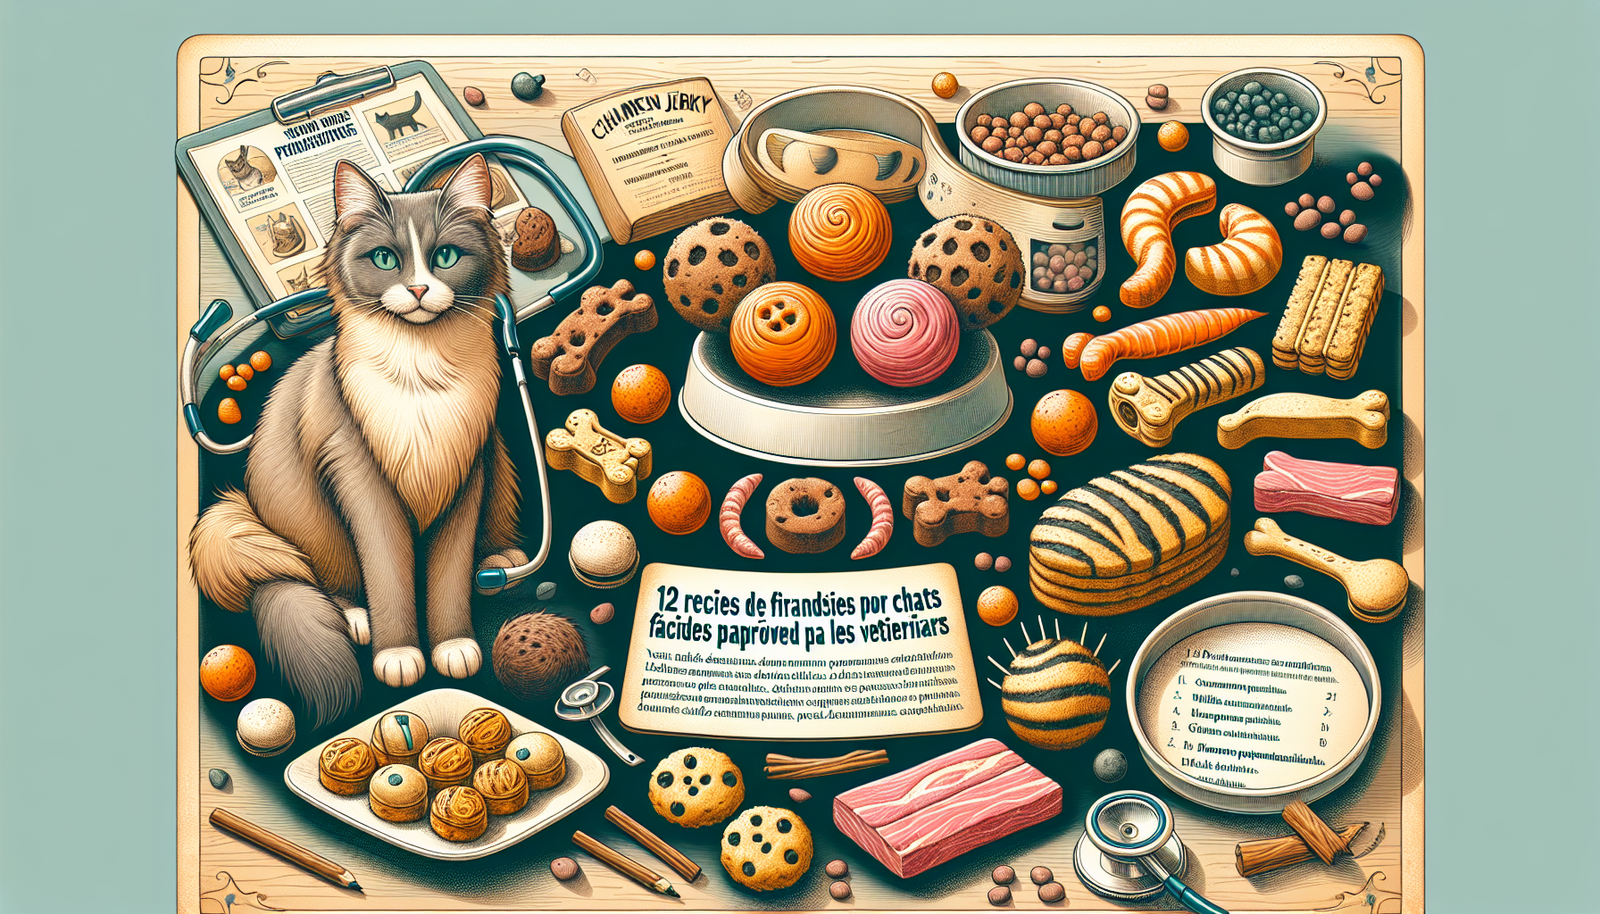 12 recettes de friandises pour chats faites maison approuvées par les vétérinaires (avec instructions) - Passion Chat